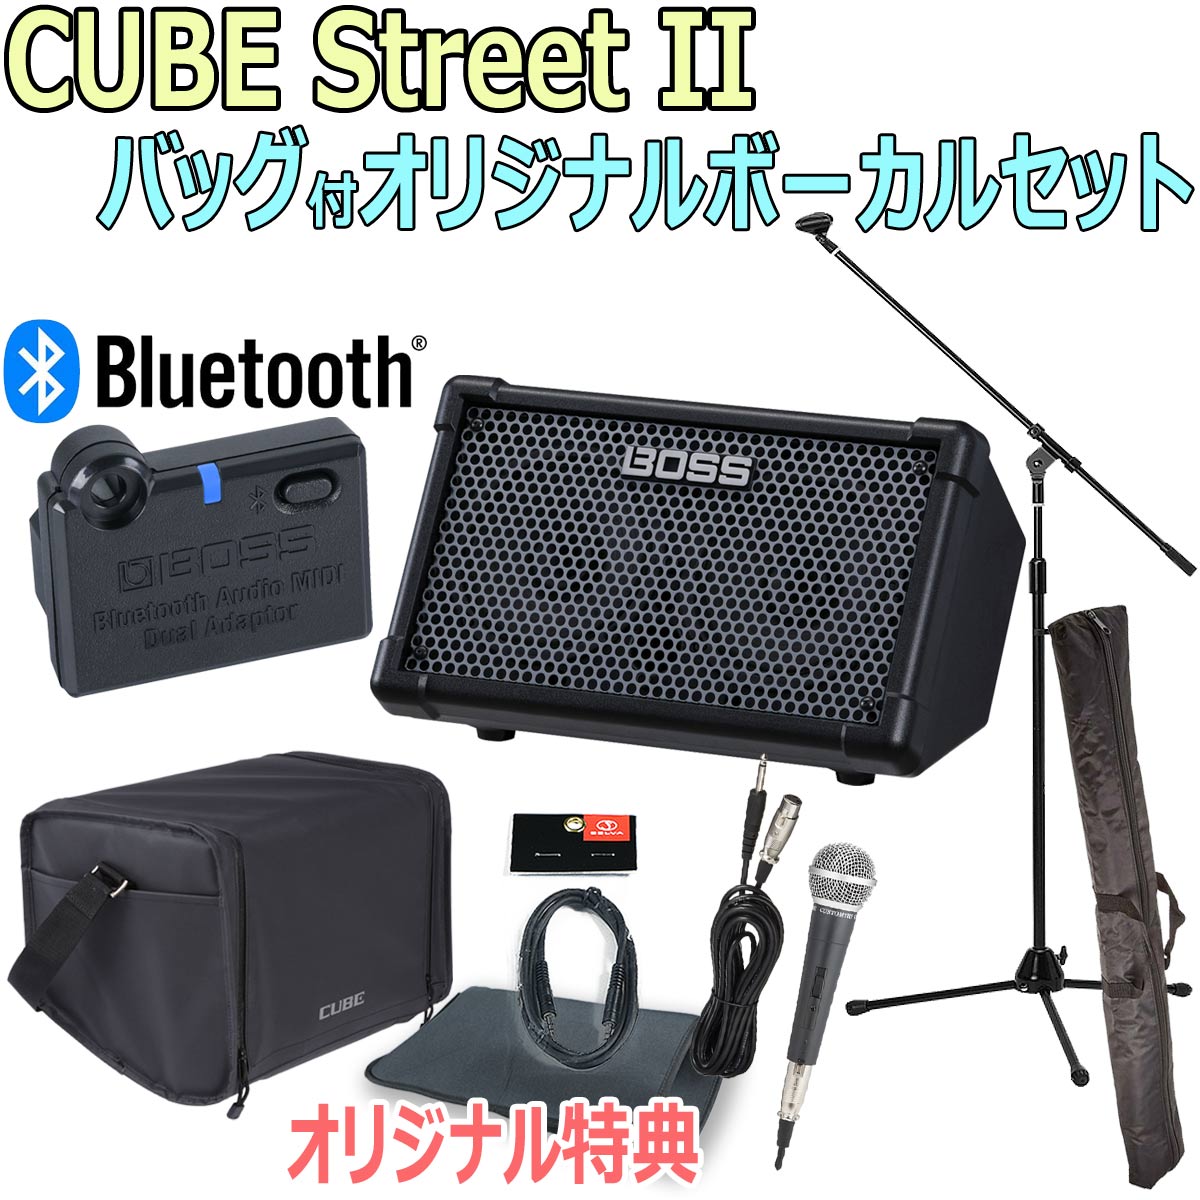 【あす楽対象商品】BOSS / CUBE Street II Black -BT-DUAL 純正バッグ付オリジナルボーカルセット-【限定特典：スリーブバッグ AUXミニケーブル】【YRK】